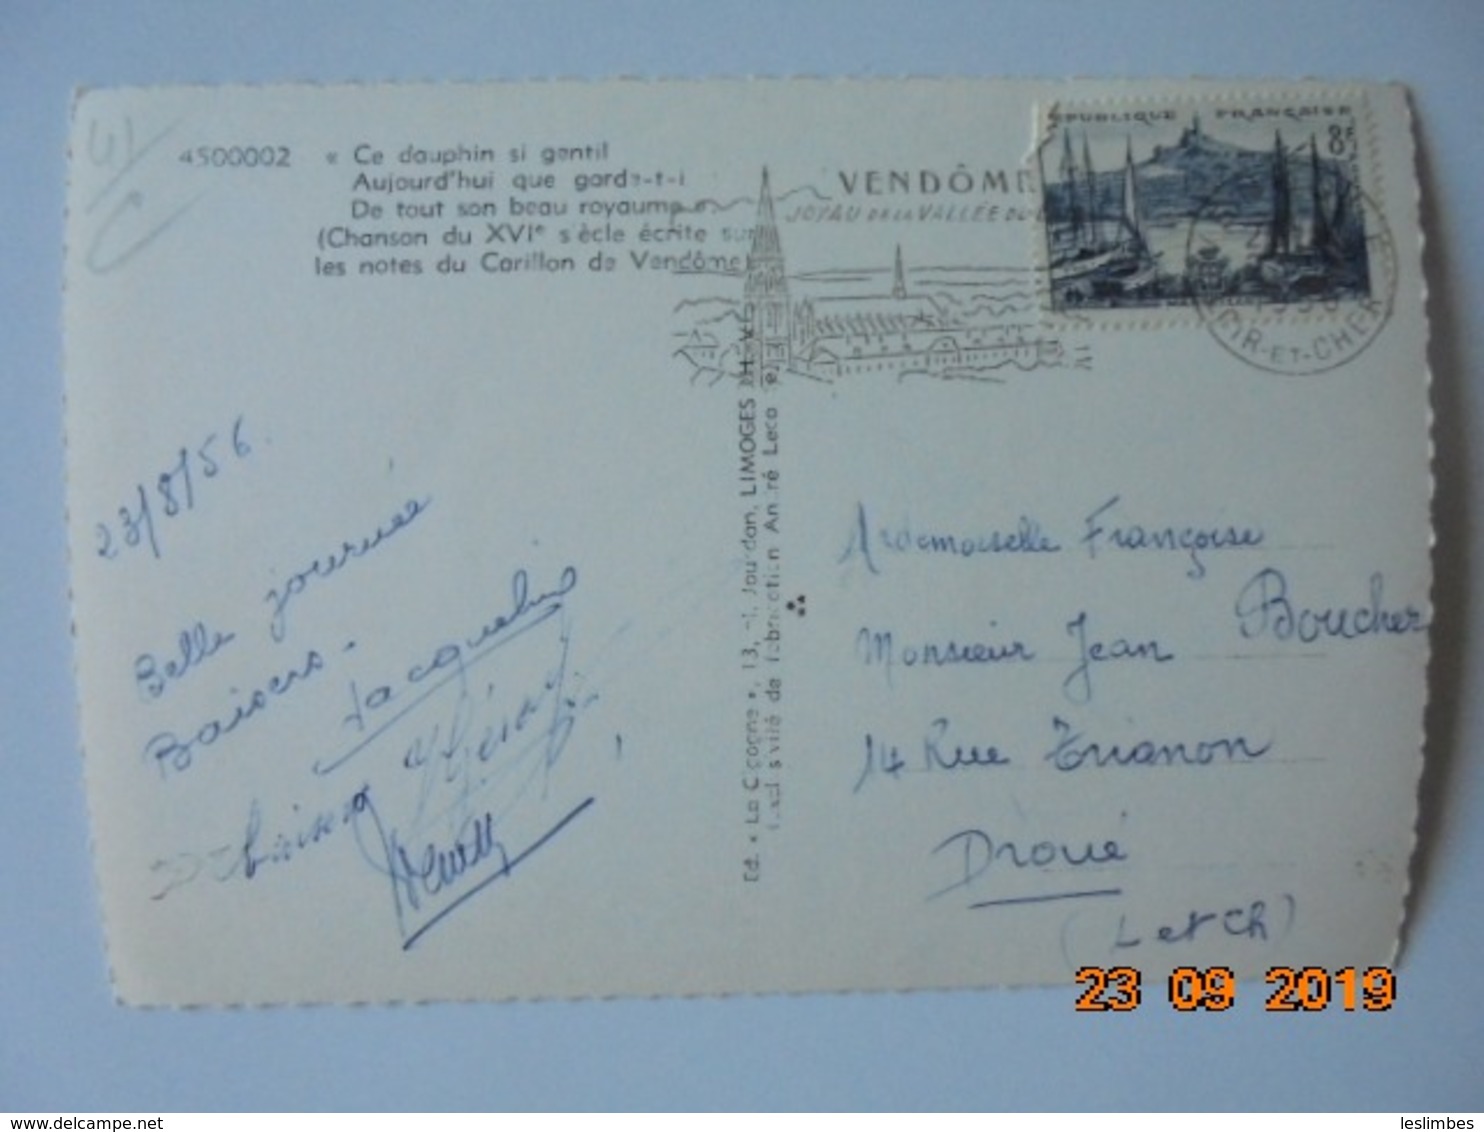 Chanson Du XVIe Siecle Ecrite Sur Les Notes Du Carillon De Vendome. La Cigogne 4500002 PM 1956 - Vendome